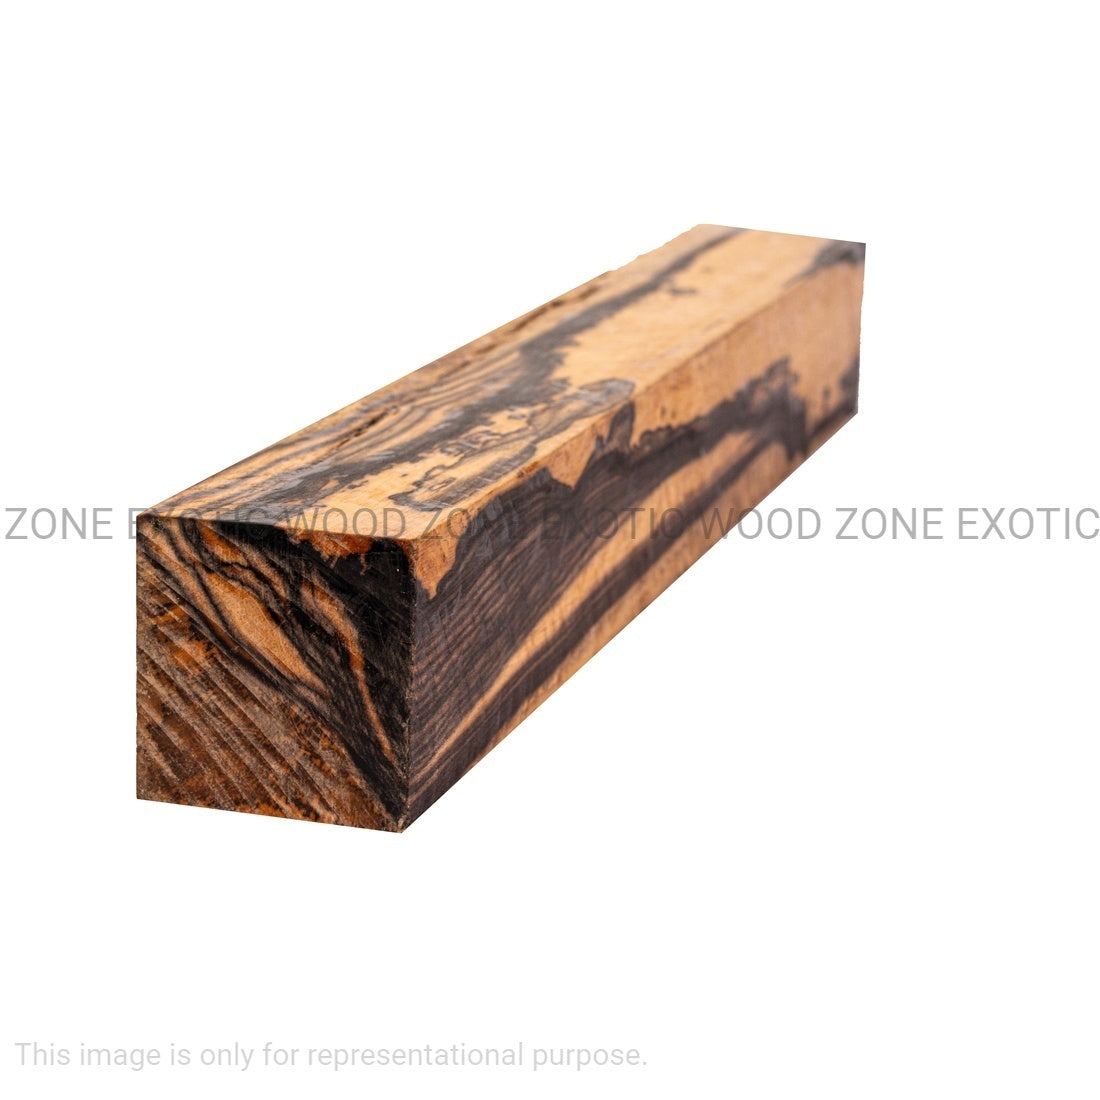 Black and White Ebony Turning Blanks - Exotic Wood Zone - Buy online Across USA 